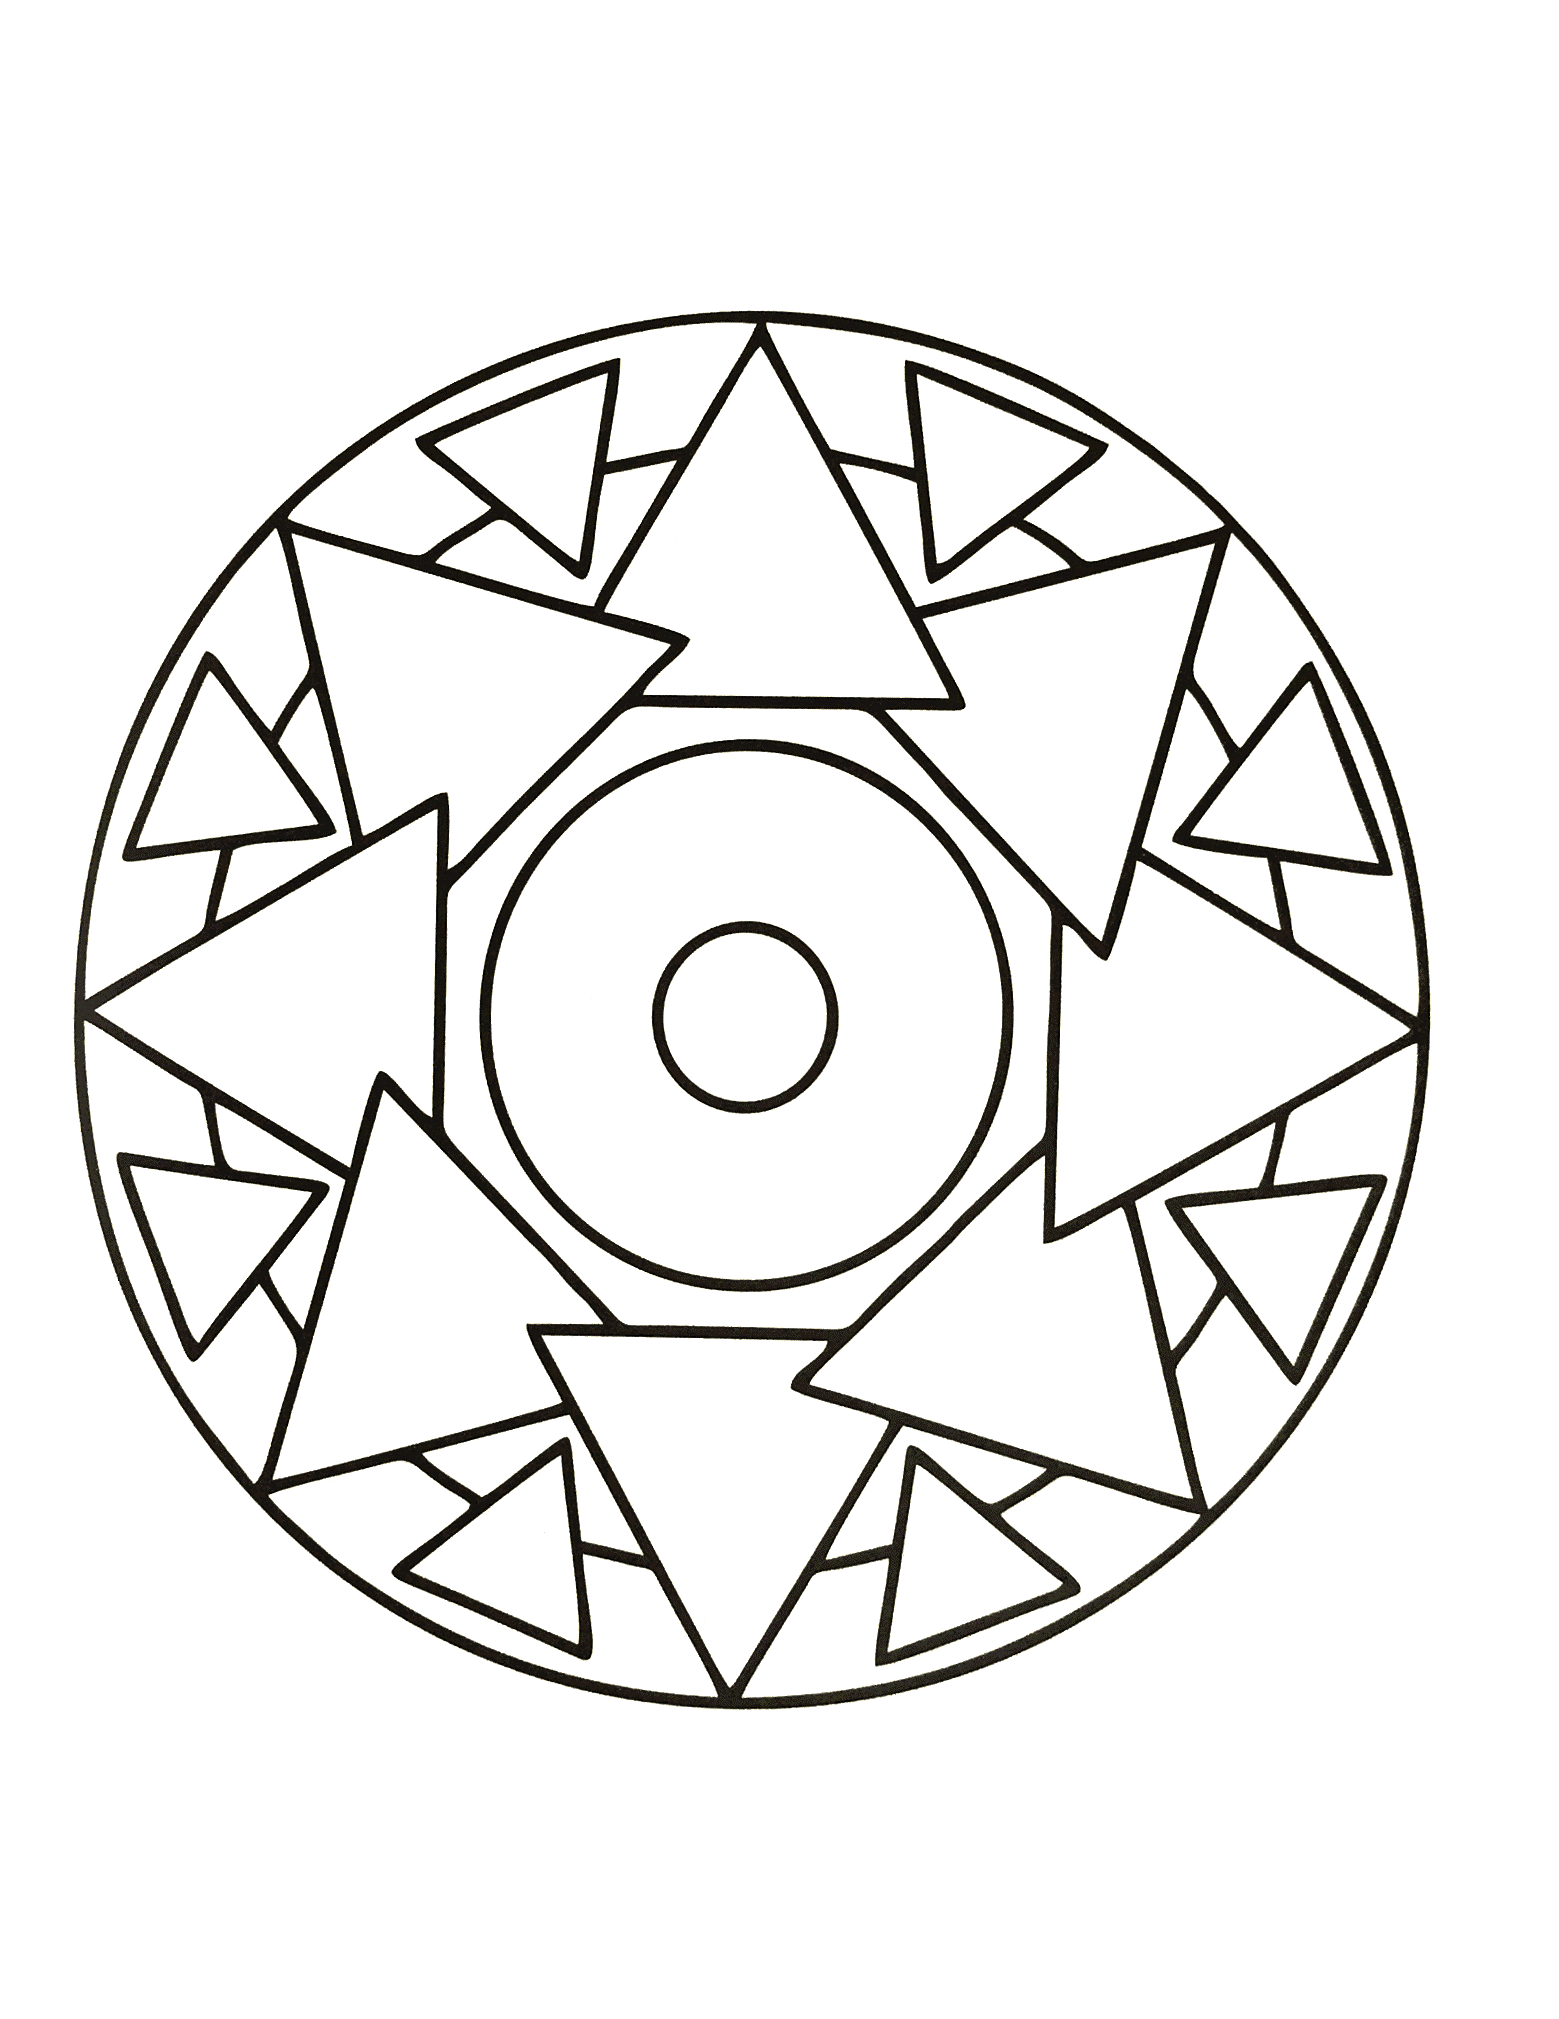 Se procura a harmonia, esta Mandala de alta qualidade ser-lhe-á certamente útil. Cabe-lhe a si encontrar o melhor método e a melhor técnica para a colorir.